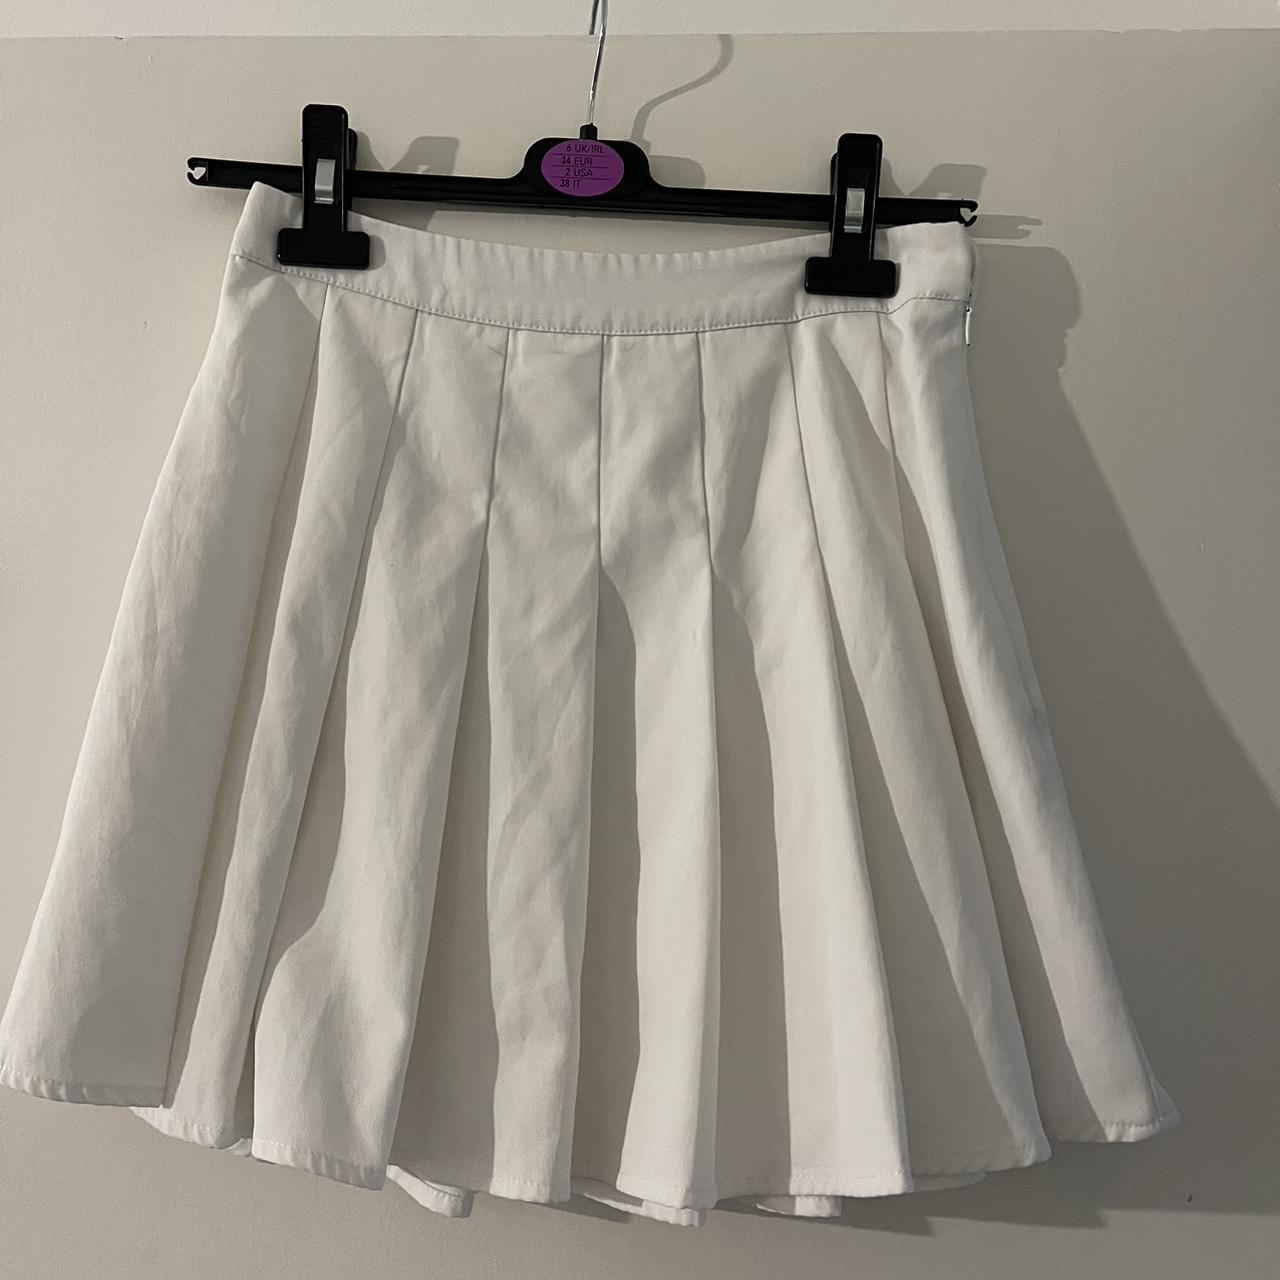 White tennis skirt - Depop